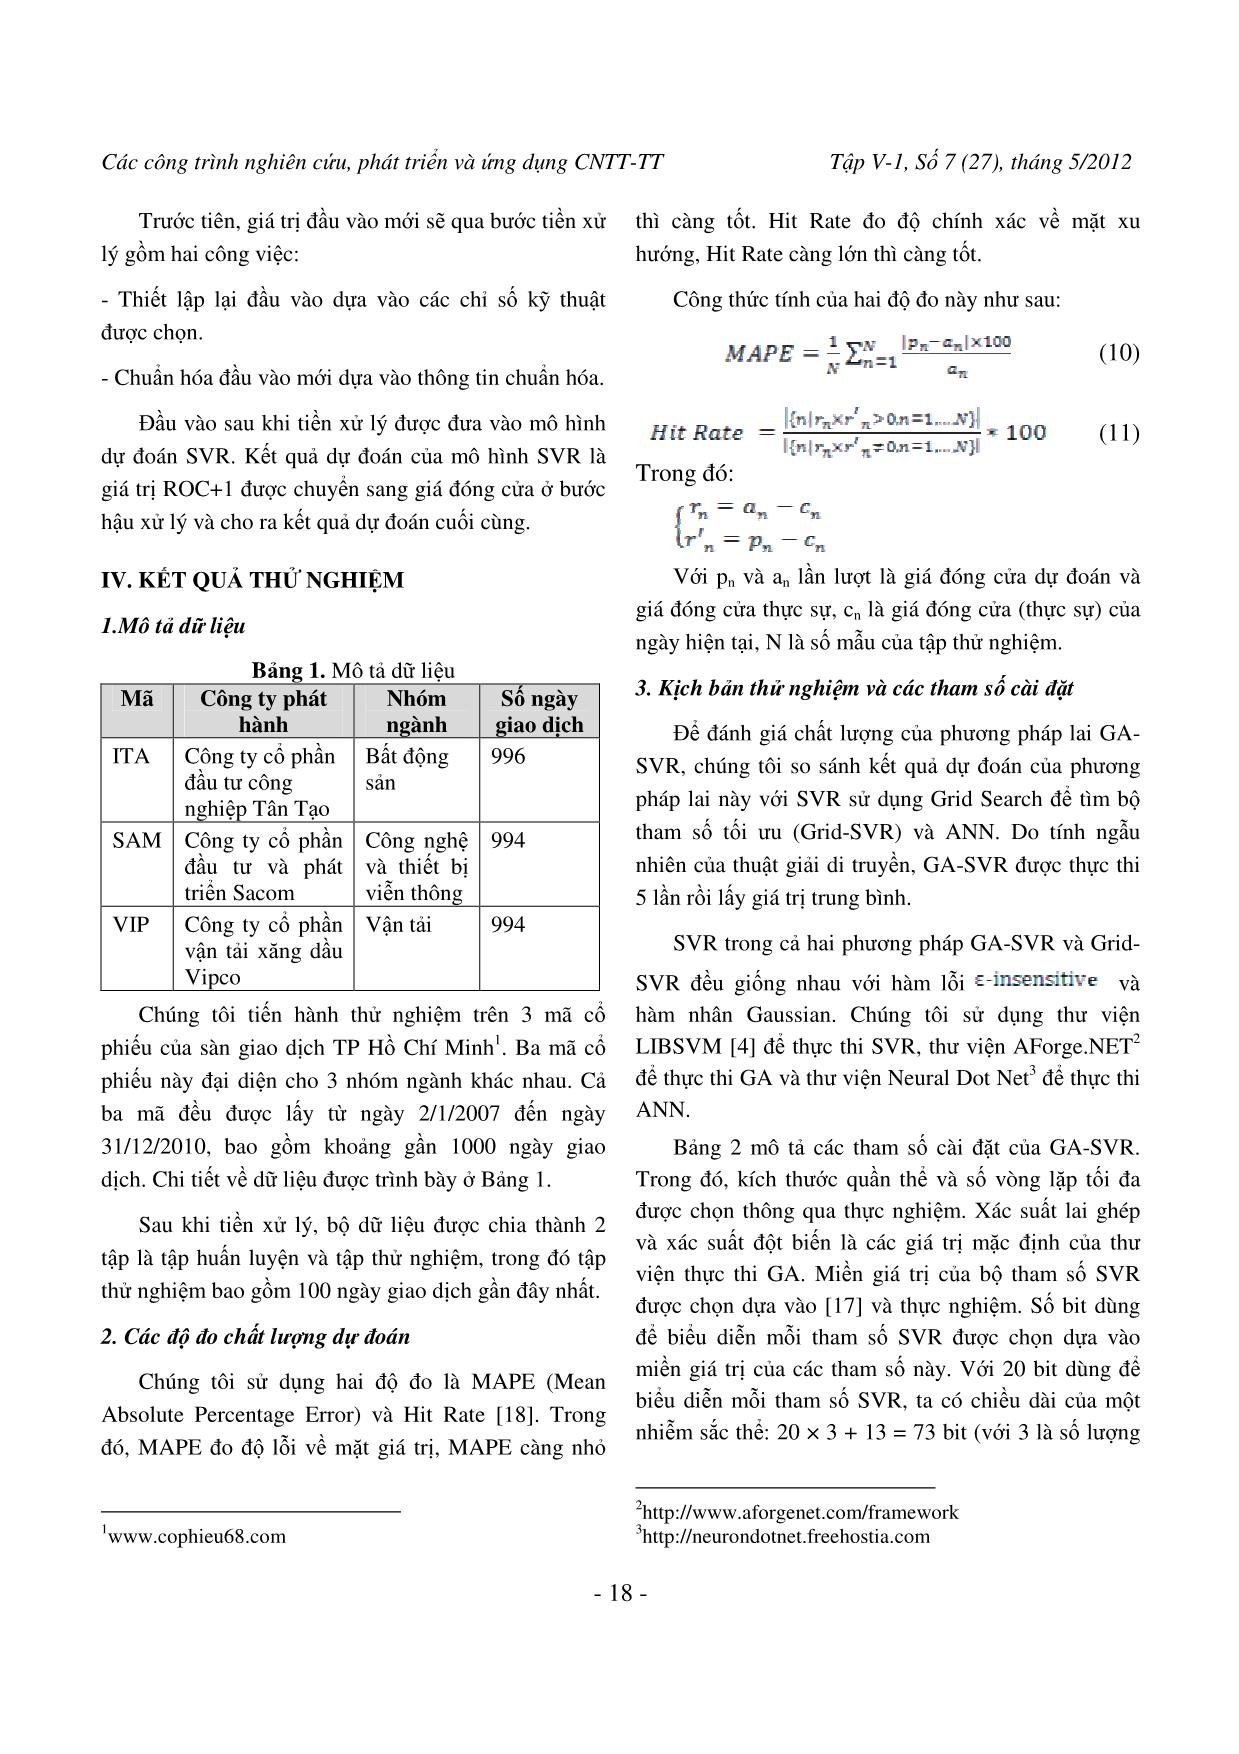 Dự đoán giá cổ phiếu trên thị trường chứng khoán Việt Nam bằng phương pháp lai GA-SVR trang 7